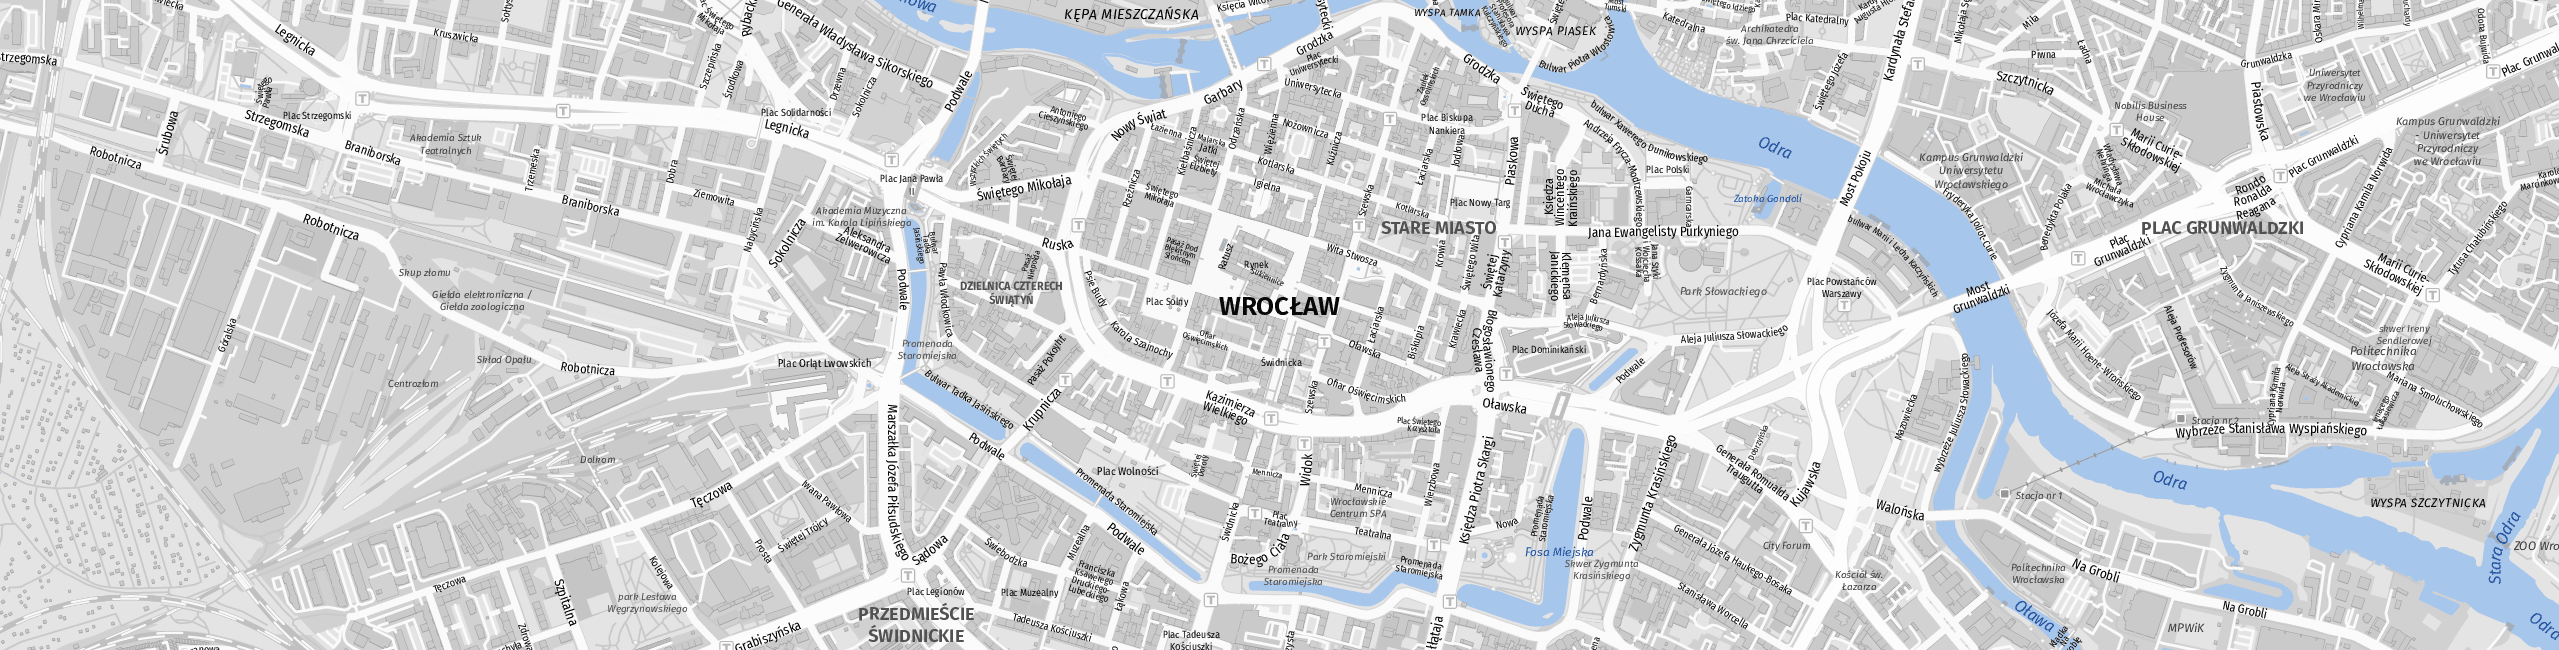 Stadtplan Wrocław zum Downloaden.